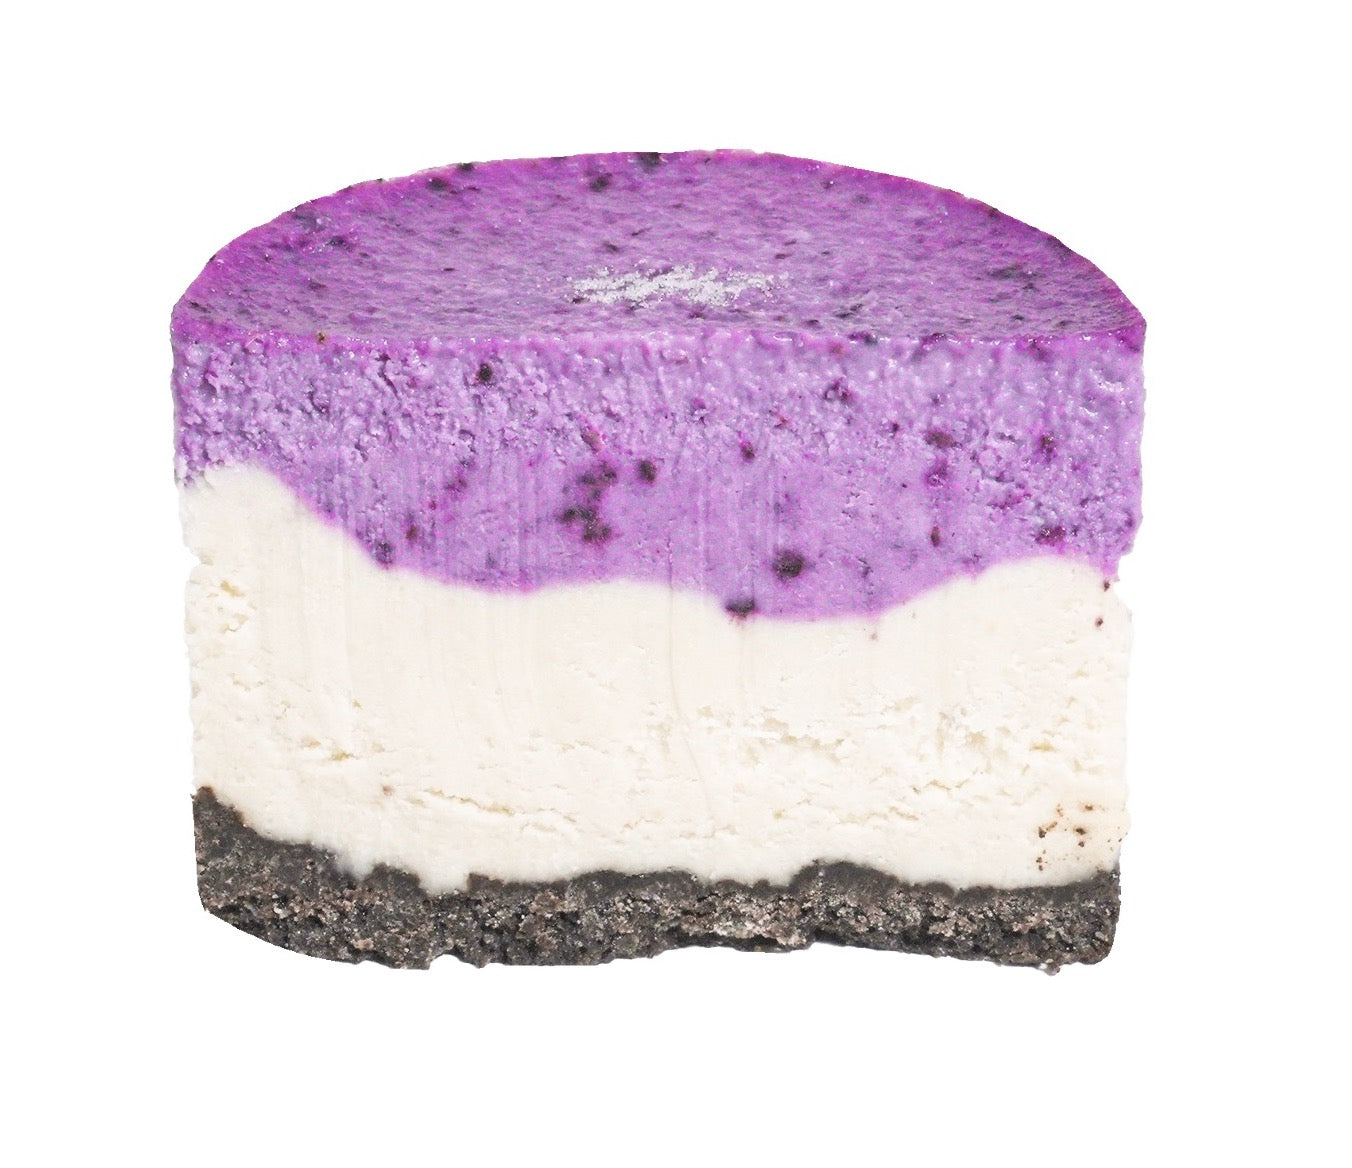 Vegan Layered Cheesecake